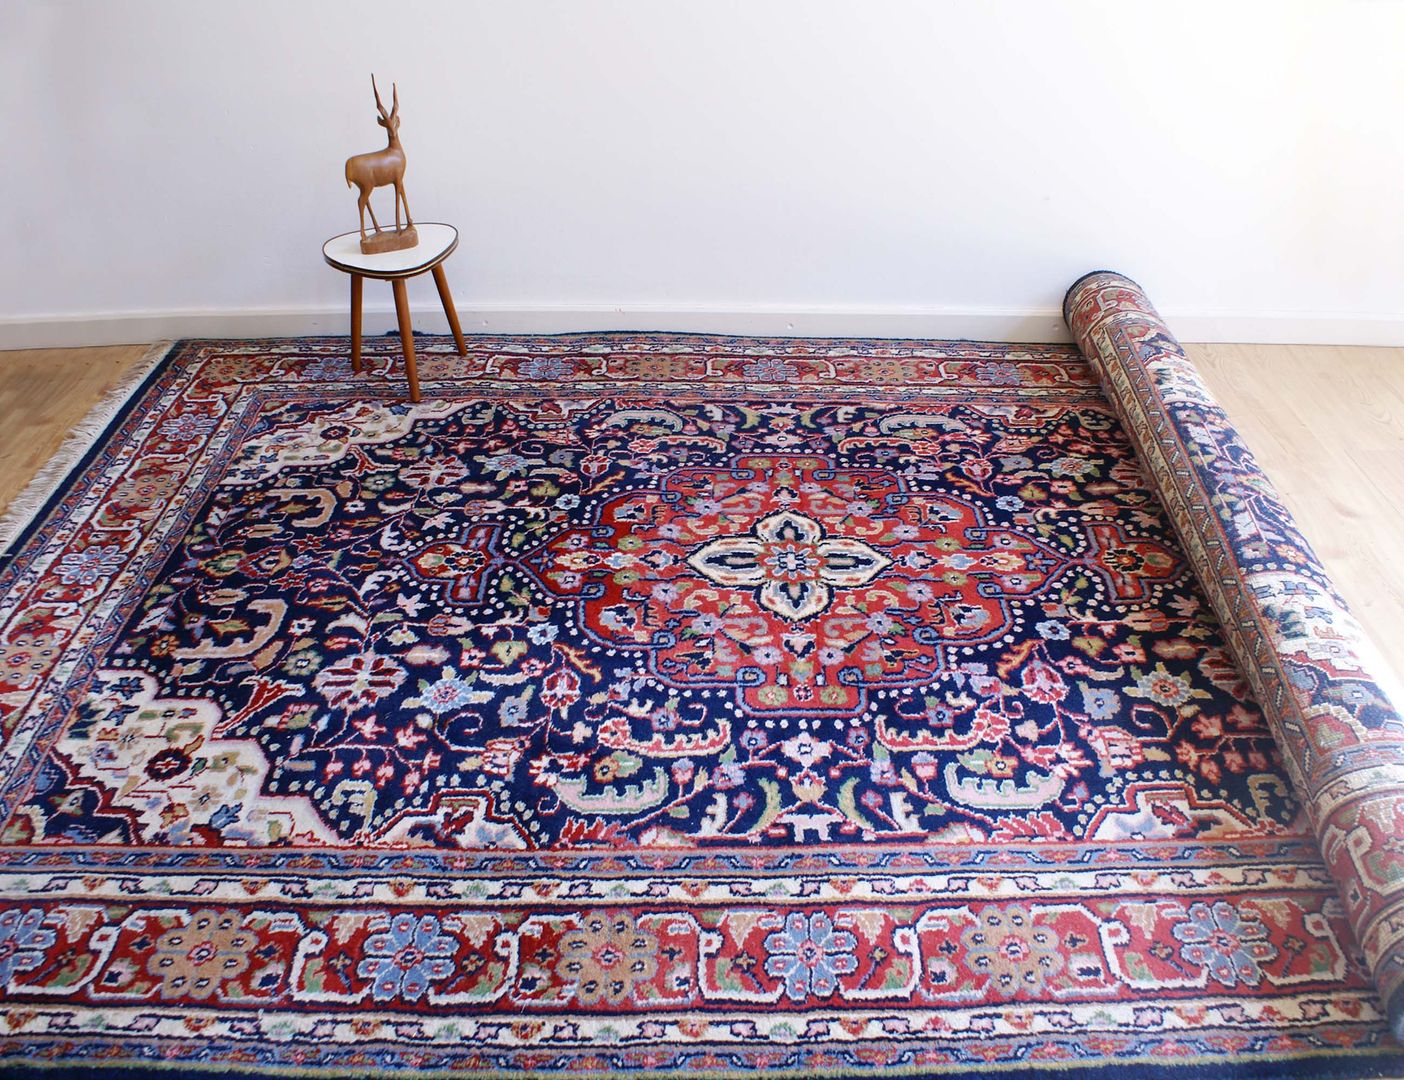 Handgeknoopt blauw/rood Perzisch tapijt. Vintage wollen kleed homify Vloeren Vloerbedekking en kleden